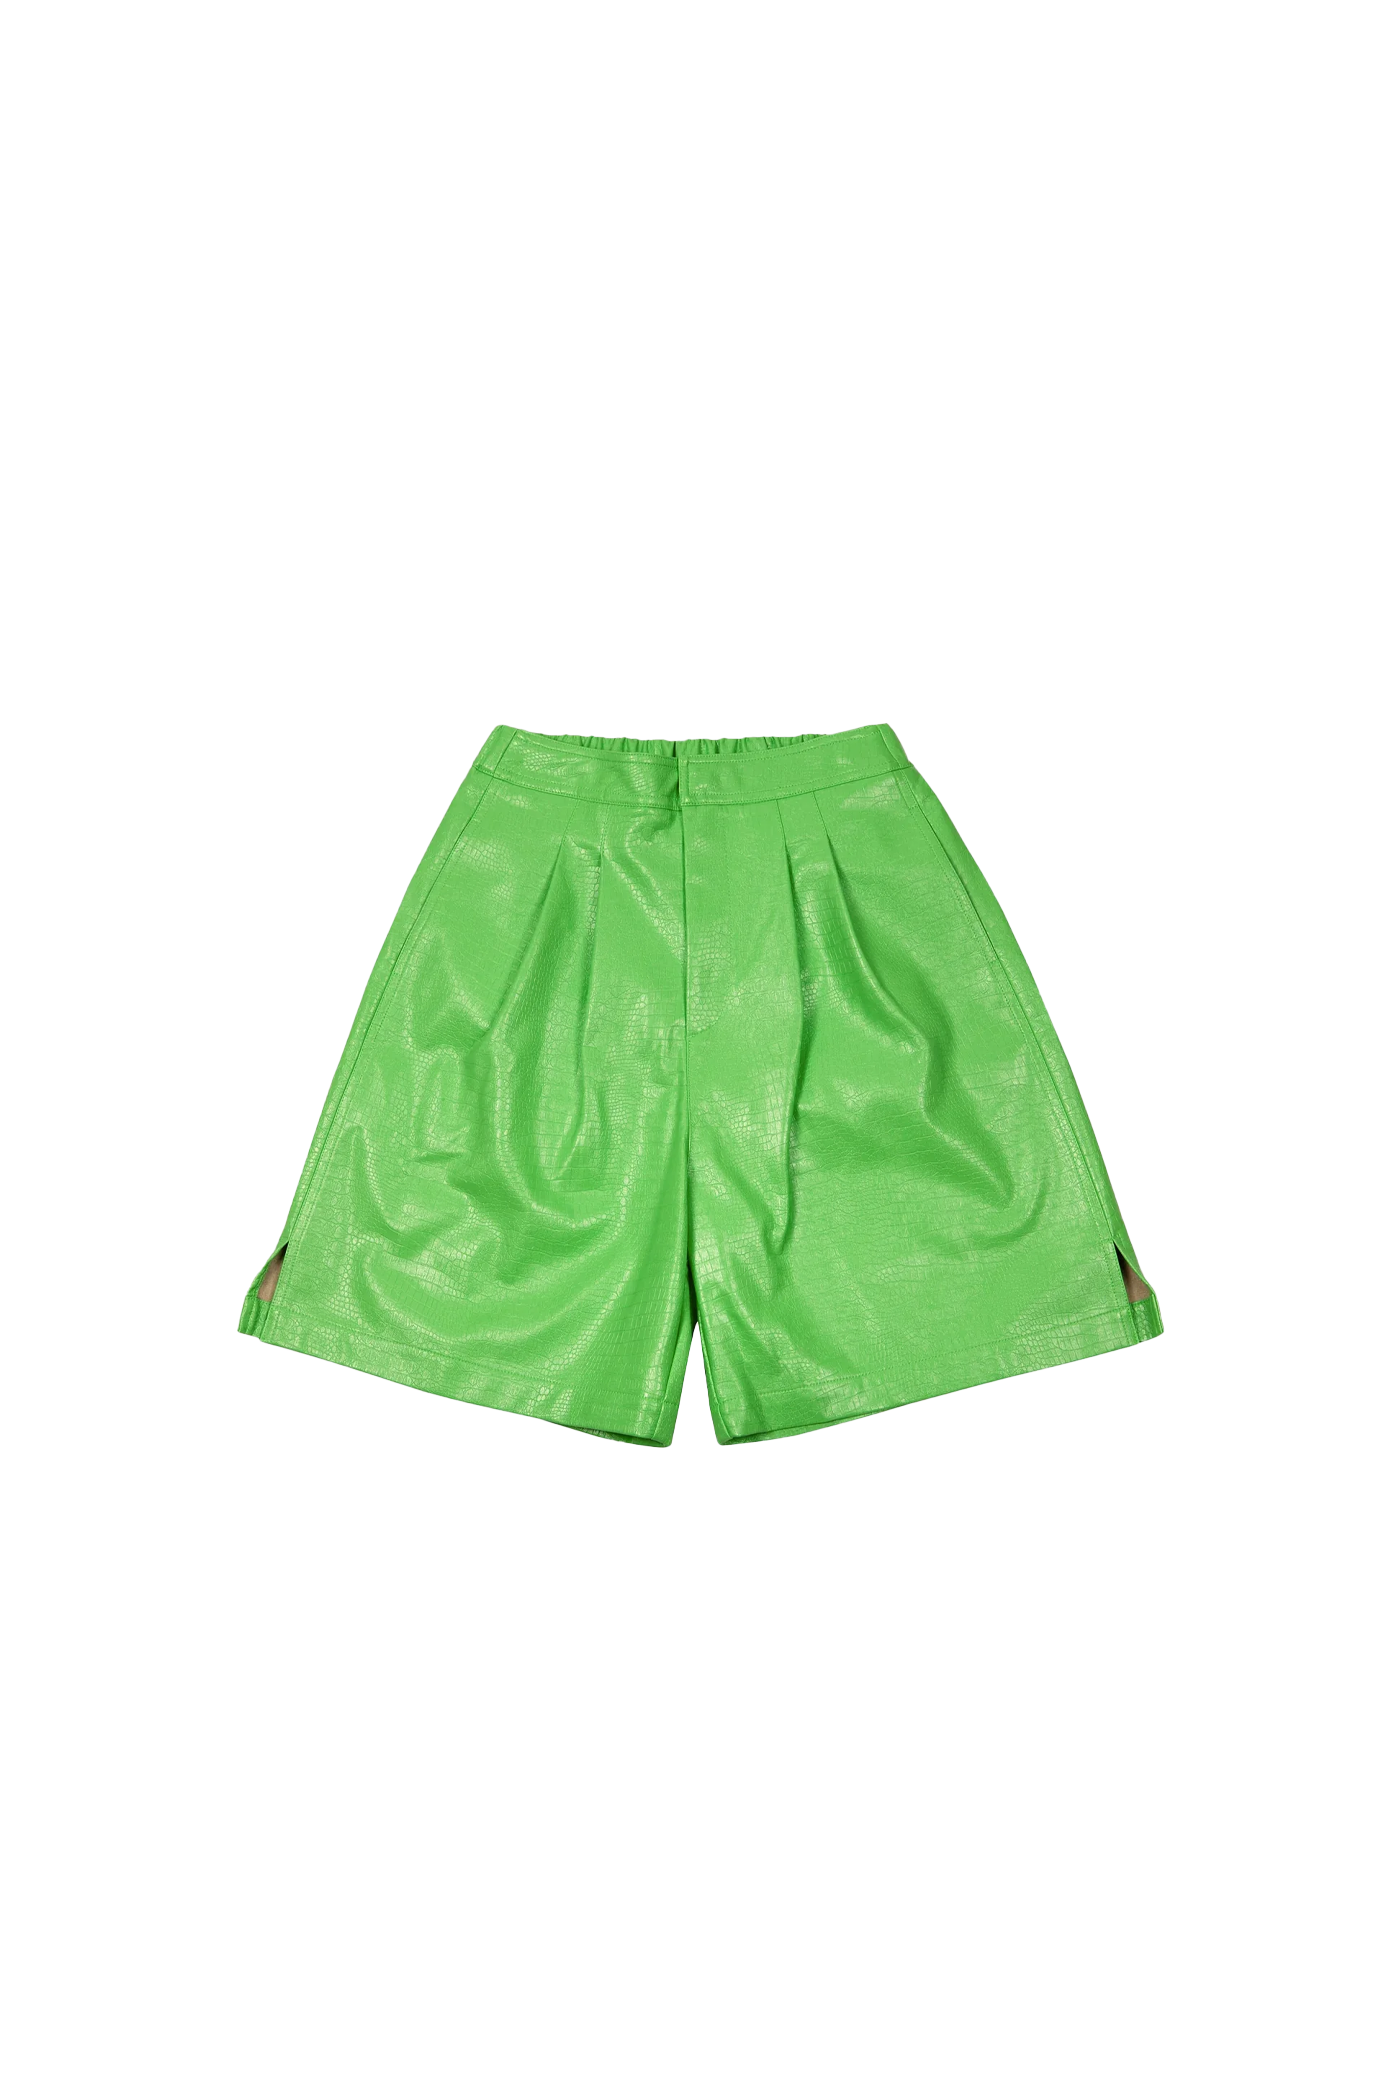 Hang Trouser Shorts - Pistachio Lizard